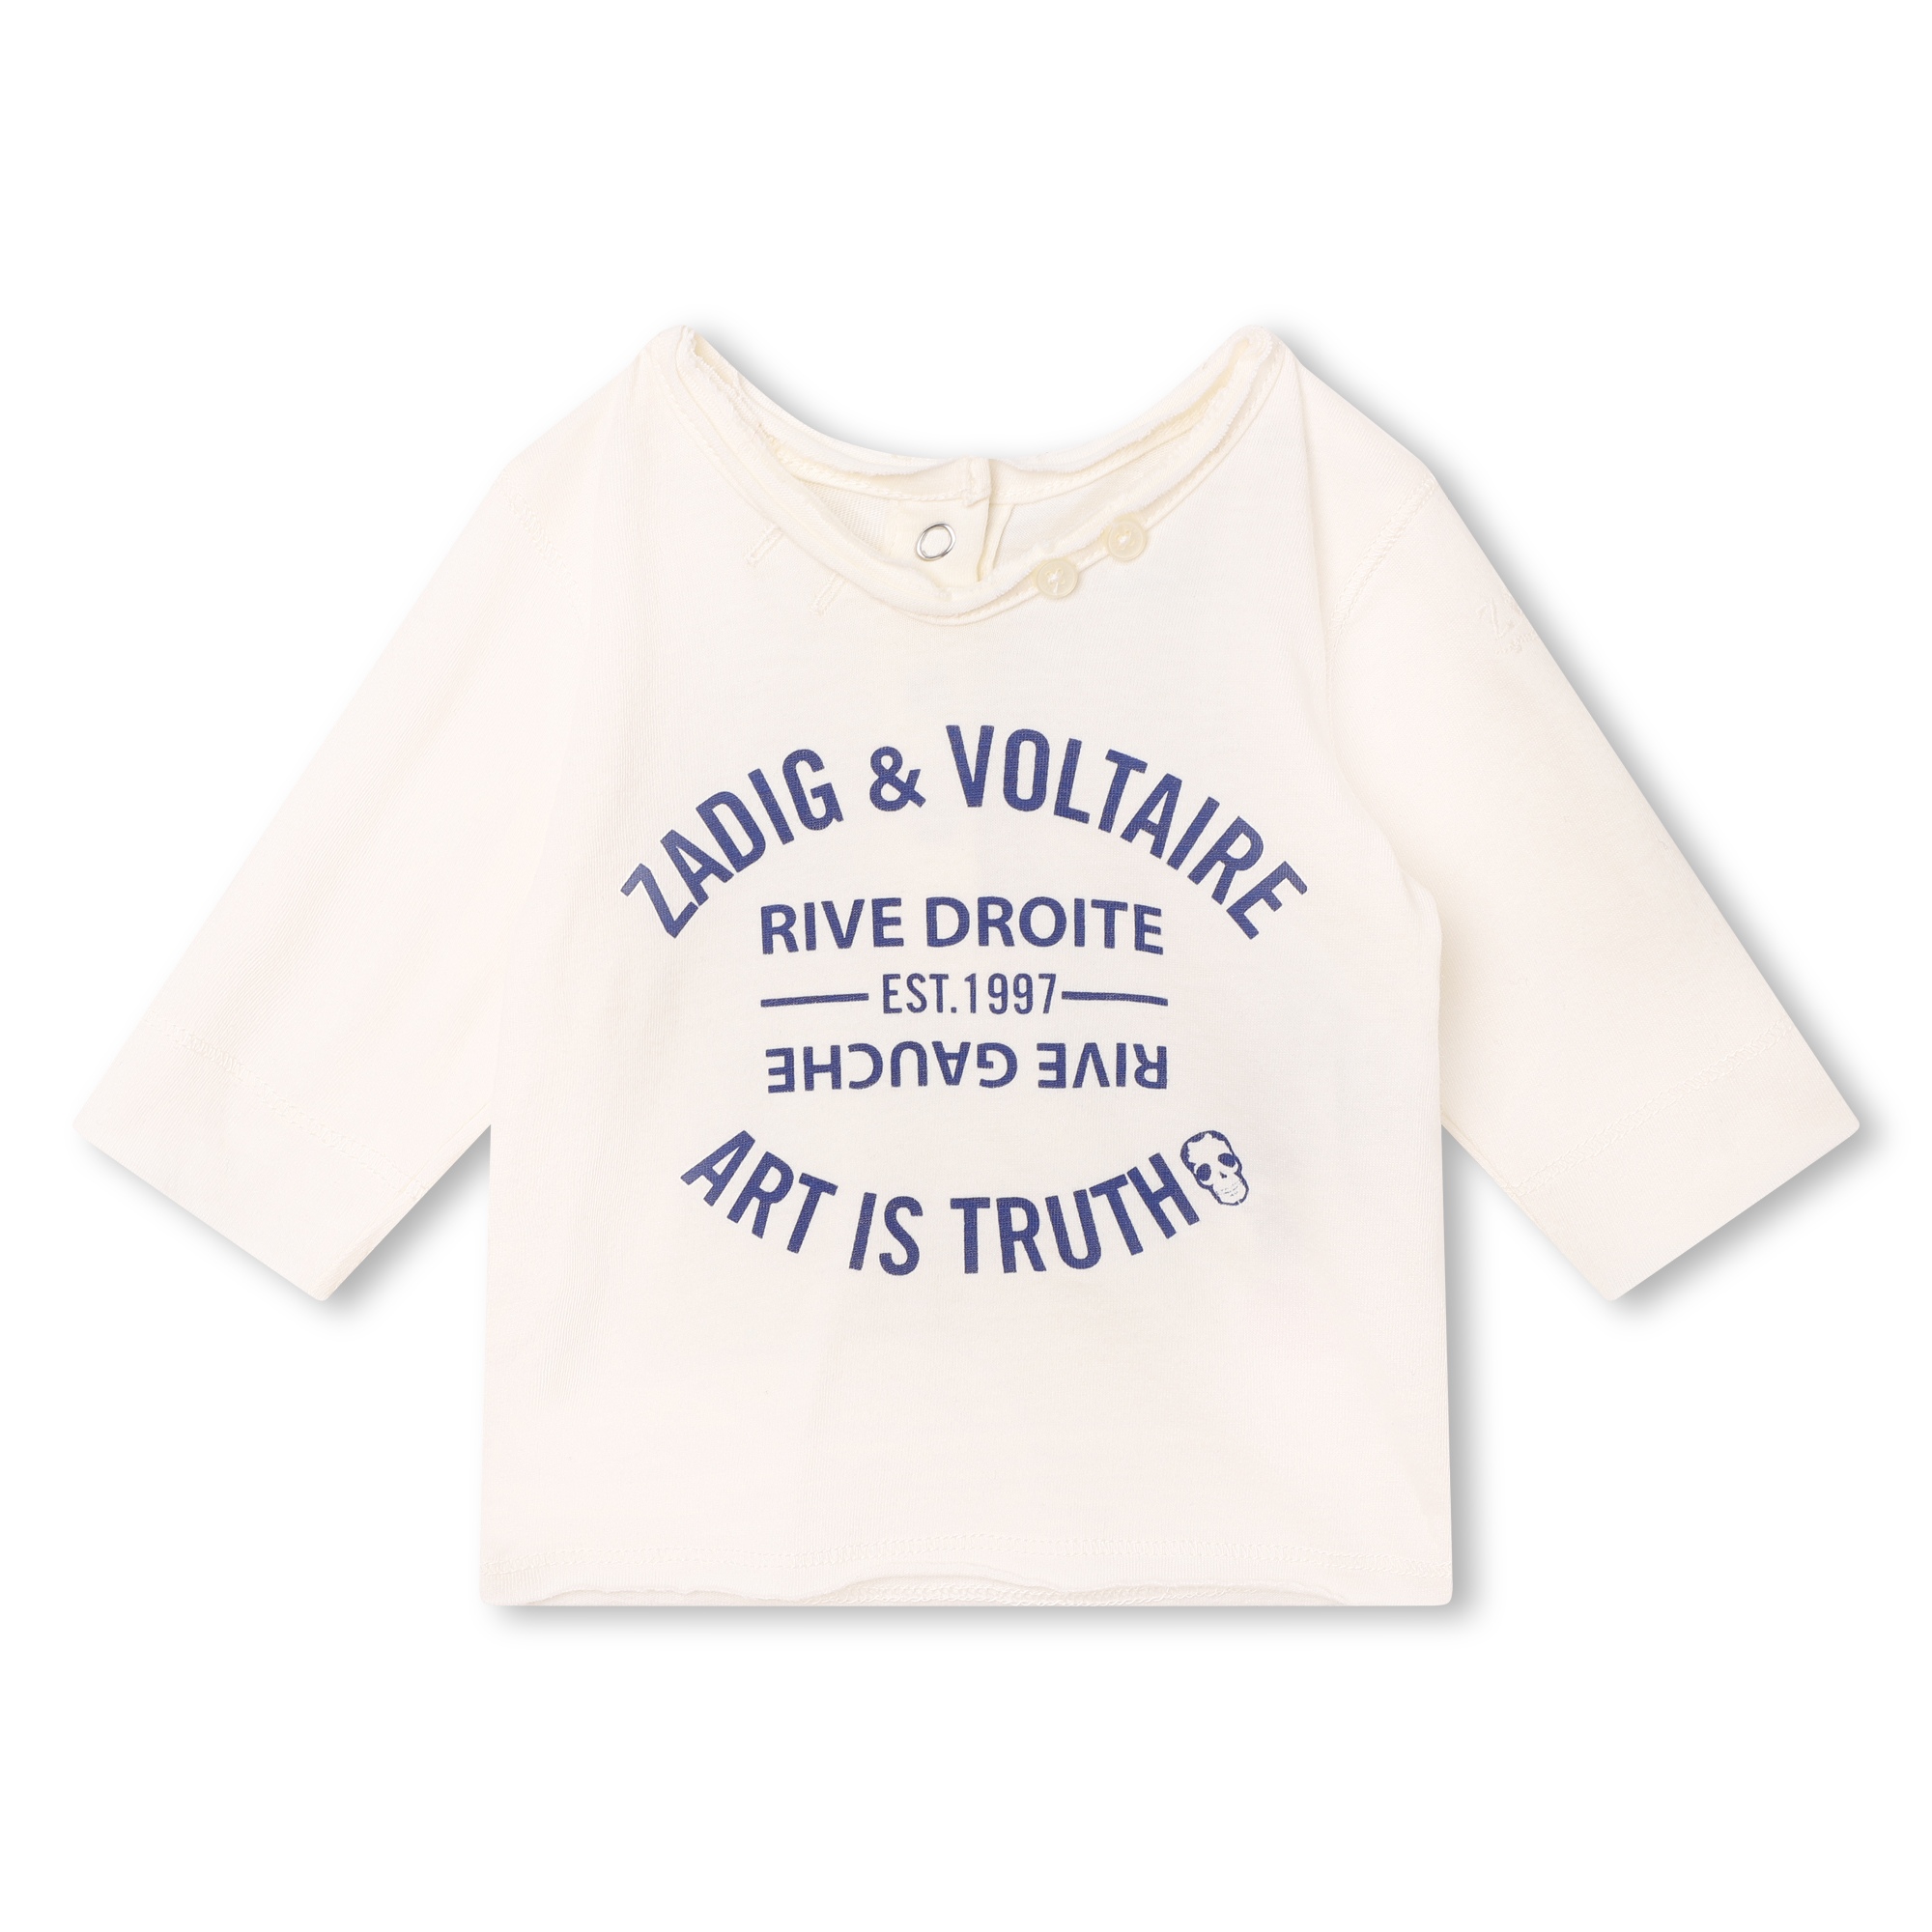 Set van T-shirt en broek ZADIG & VOLTAIRE Voor